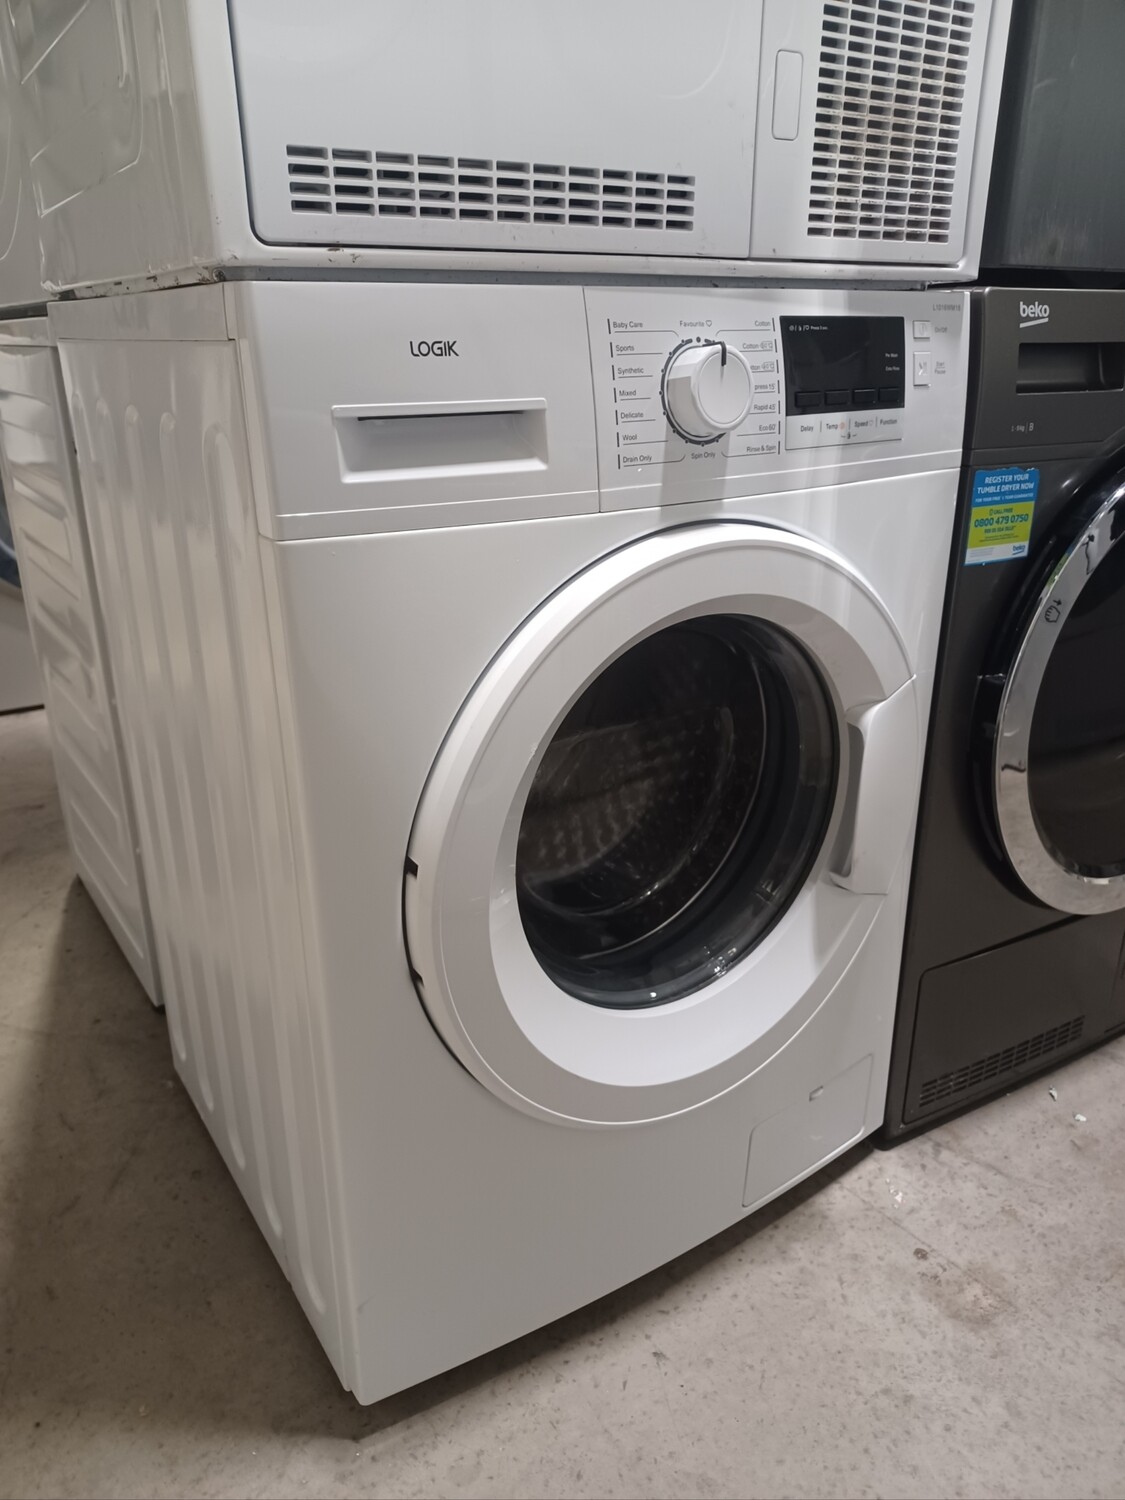 Logik L1016WM18 10kg Load, 1600 Spin Washing Machine - White - Refurbished - 6 Month Guarantee